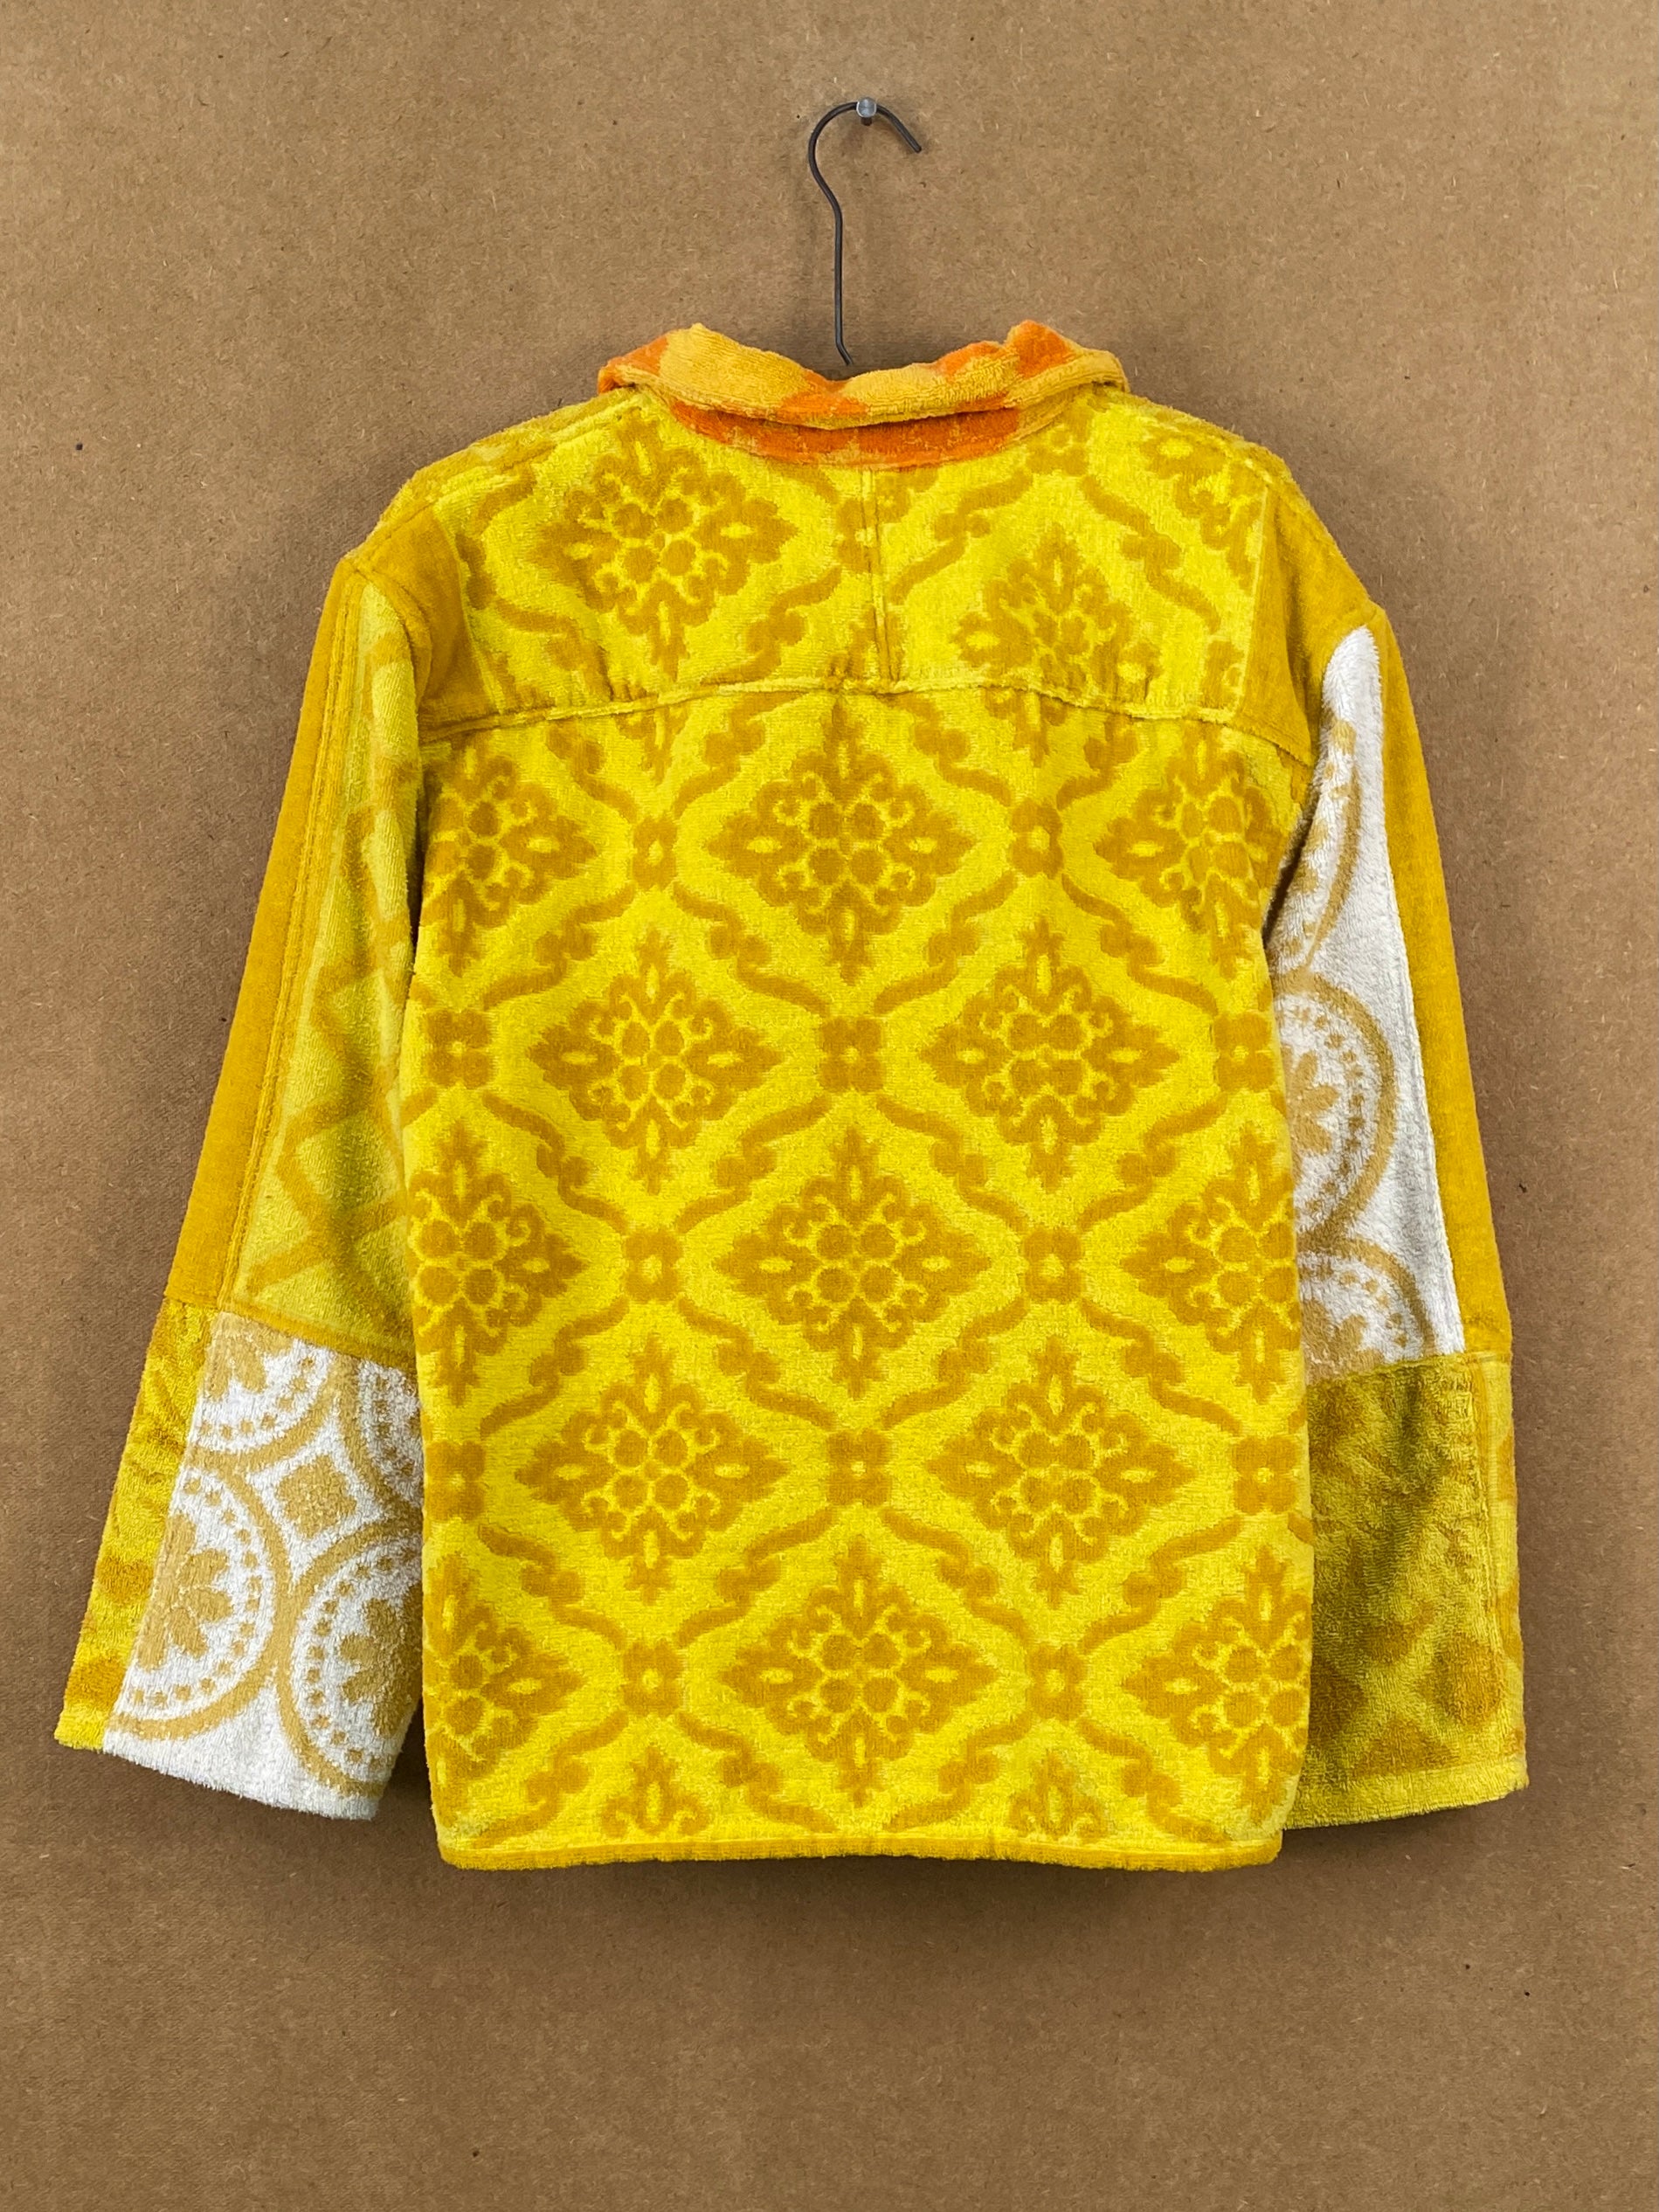 Marigold Towel Jacket - L/XL